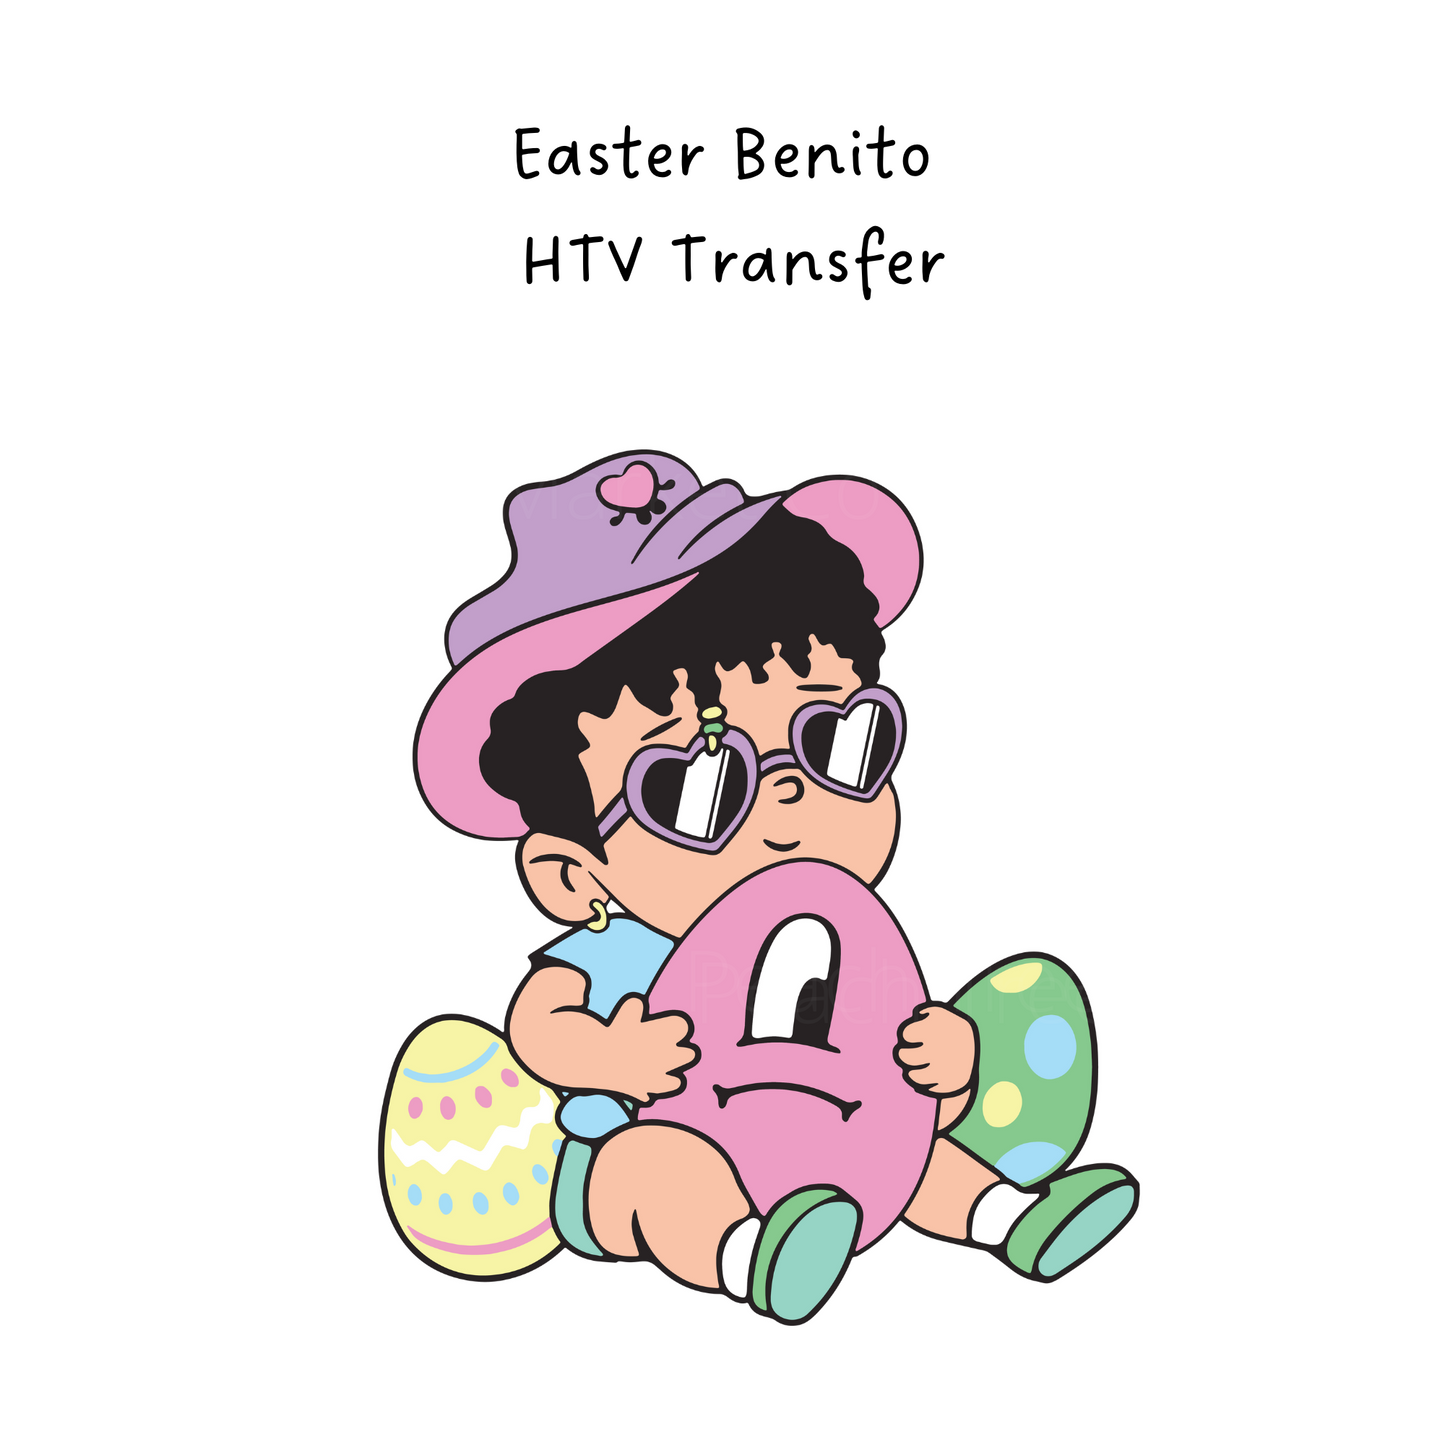 Easter Benito HTV Transfer